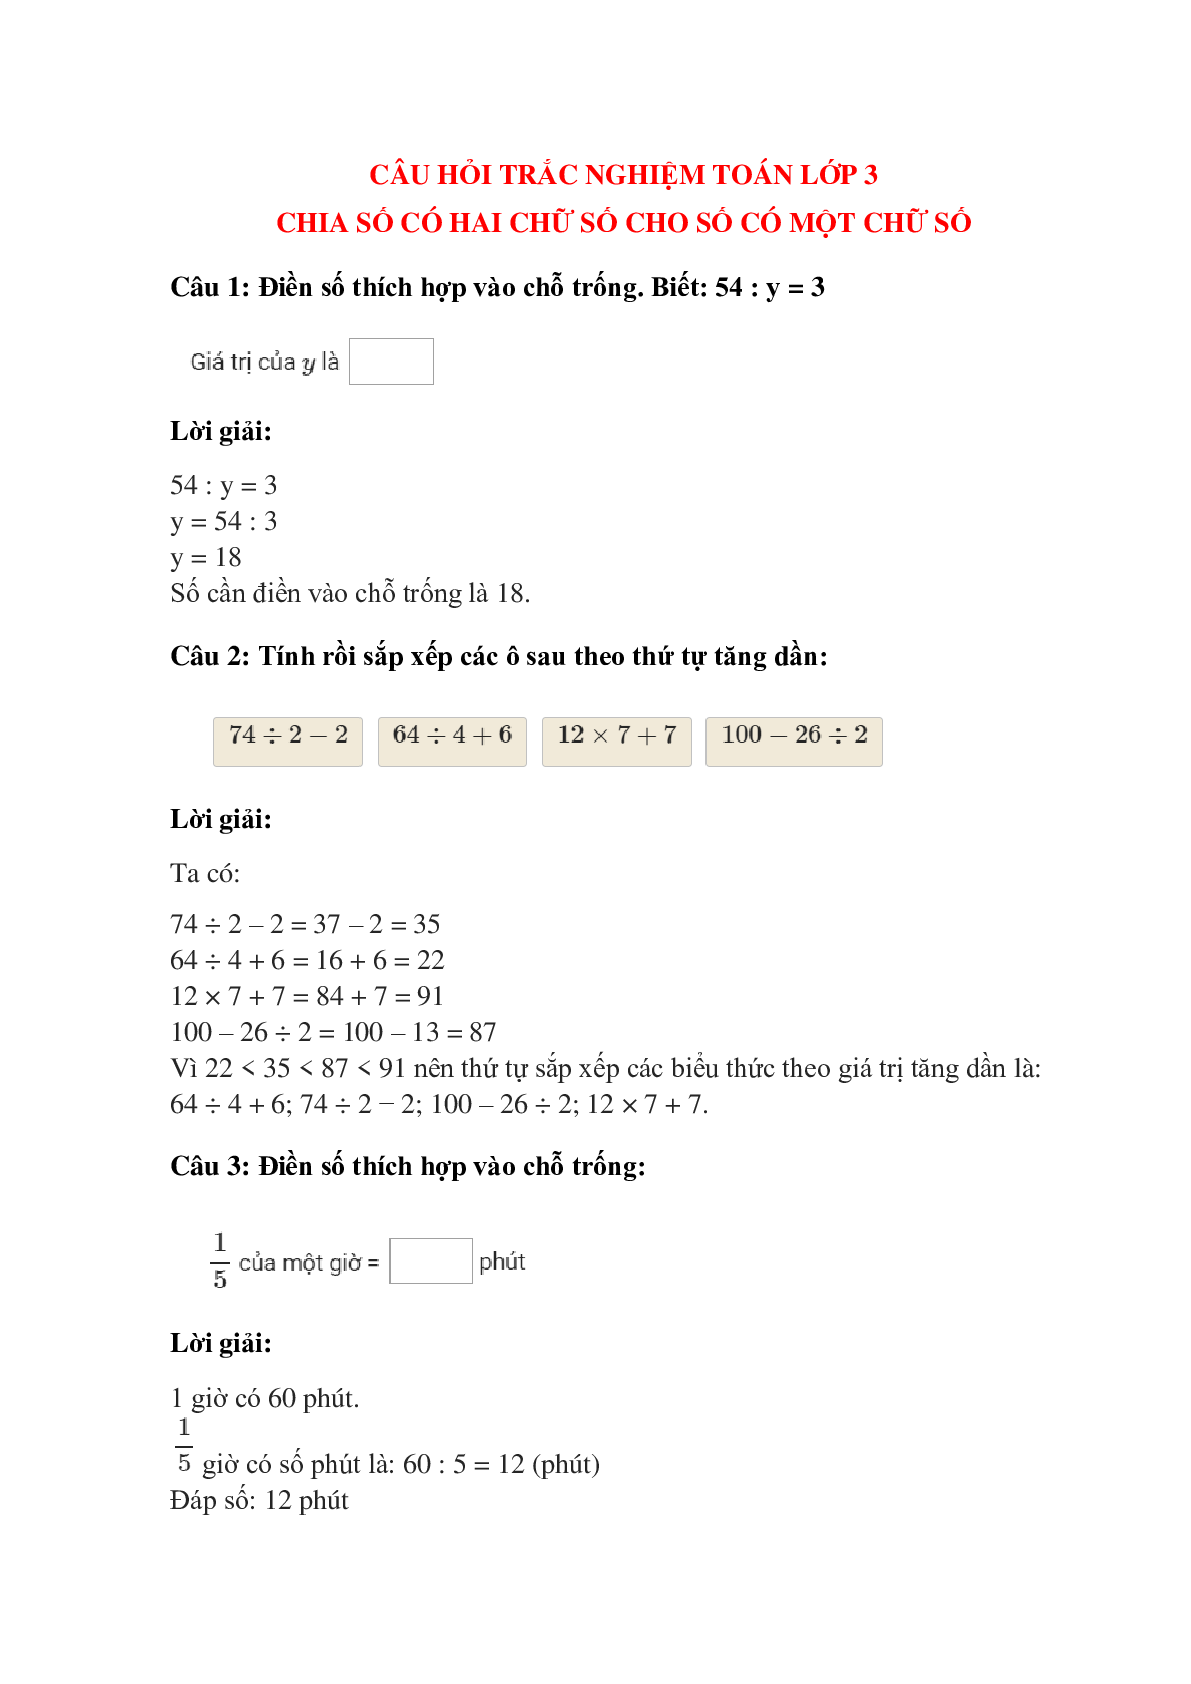 Trắc nghiệm Chia số có hai chữ số cho số có một chữ số có đáp án – Toán lớp 3 (trang 1)